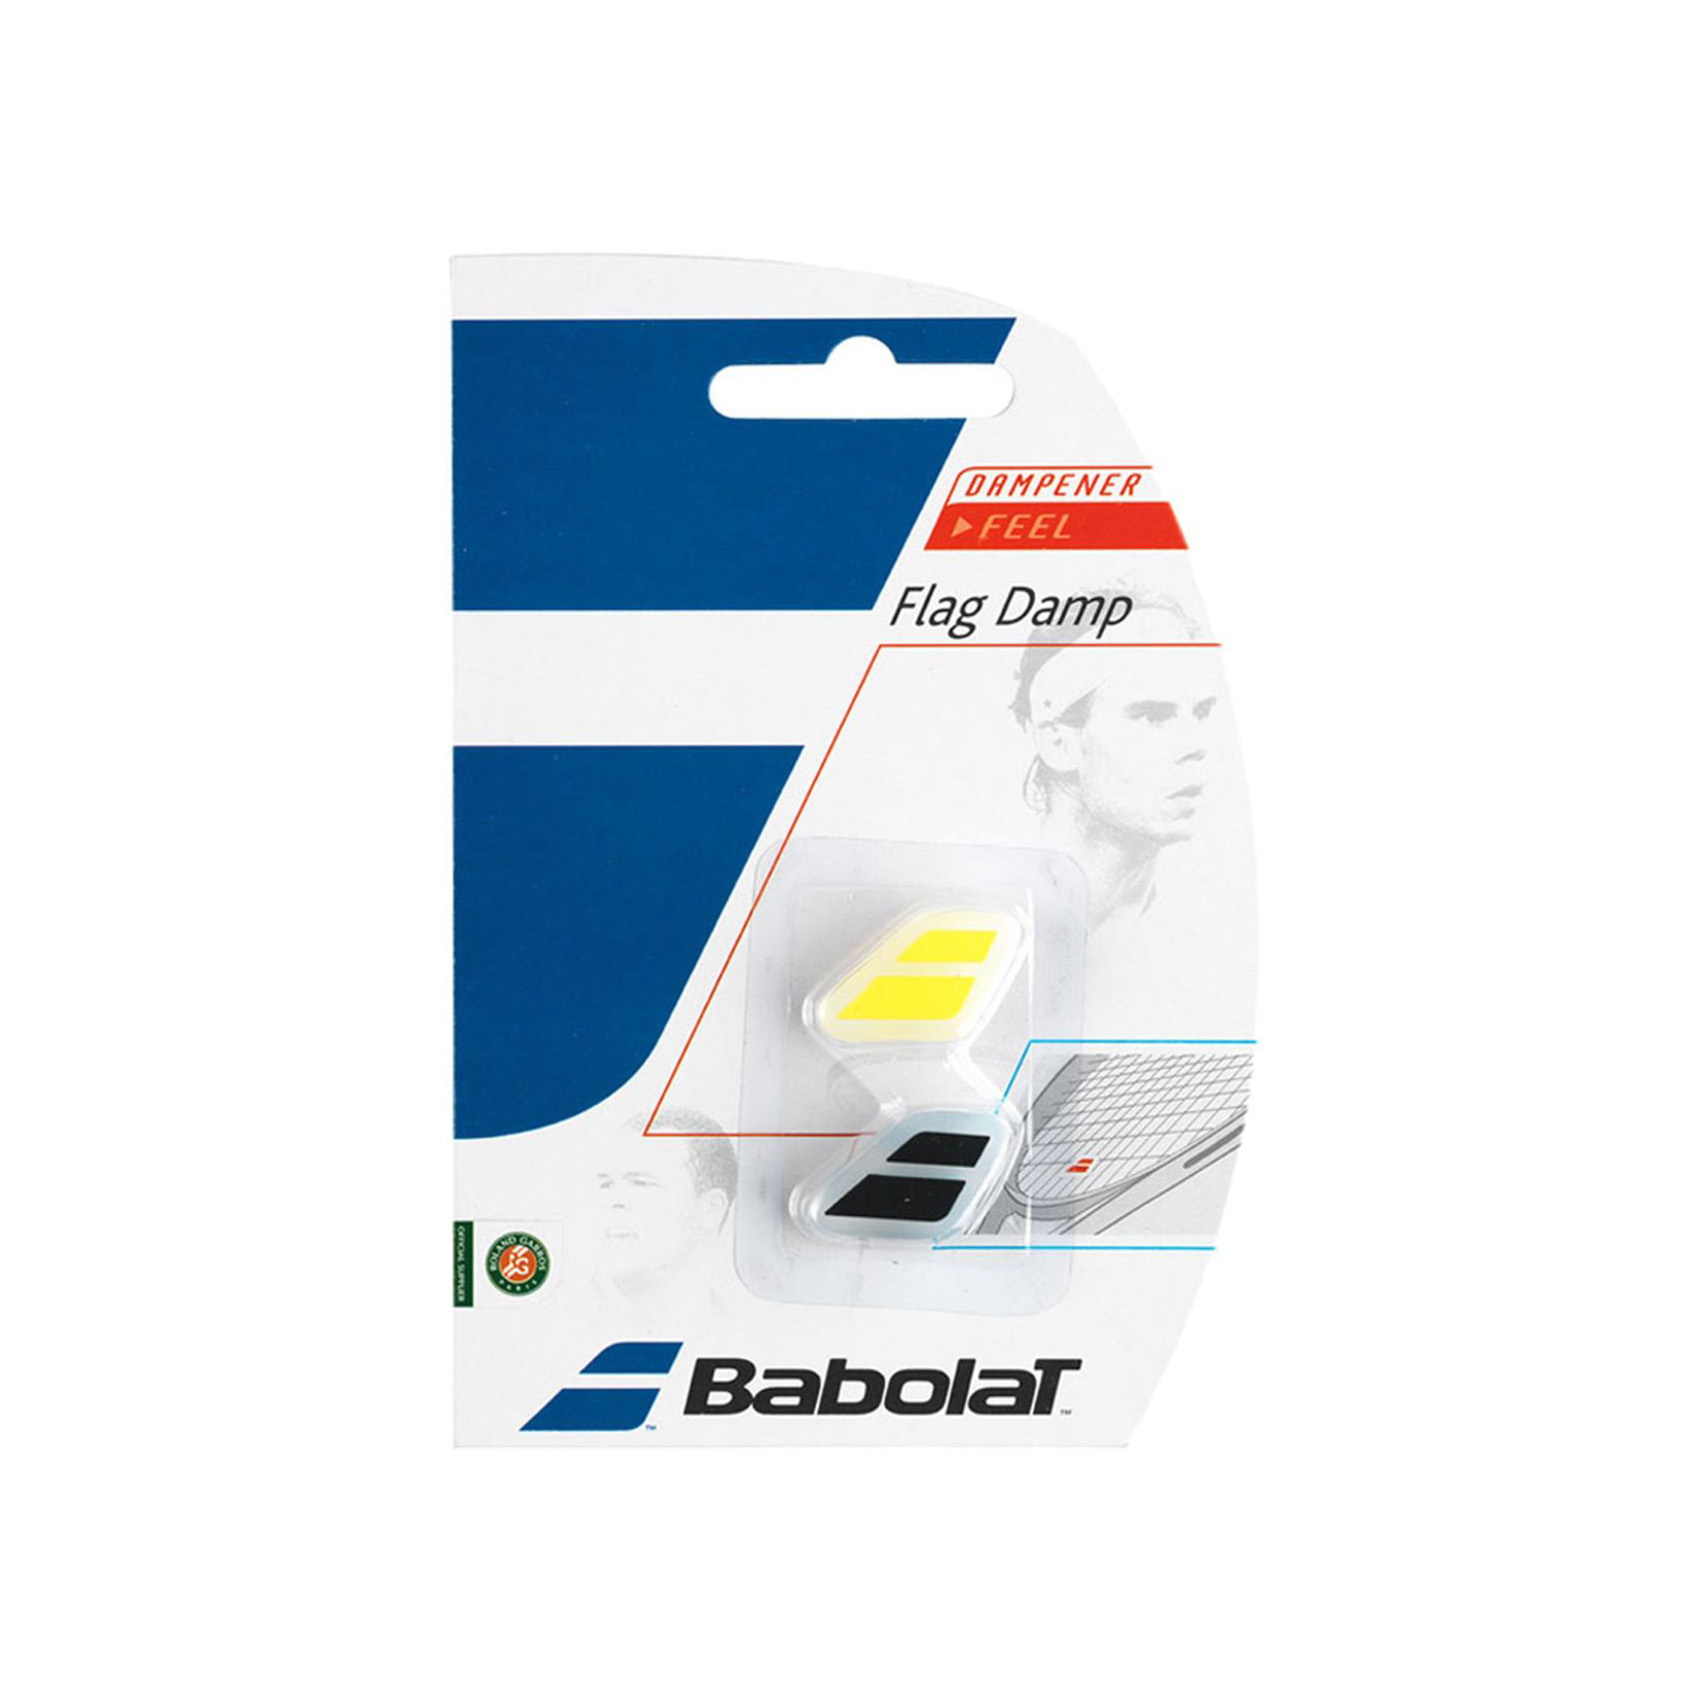 Babolat Flag Damp Tenis Raketi Vibrasyon Önleyici - SARI - 1